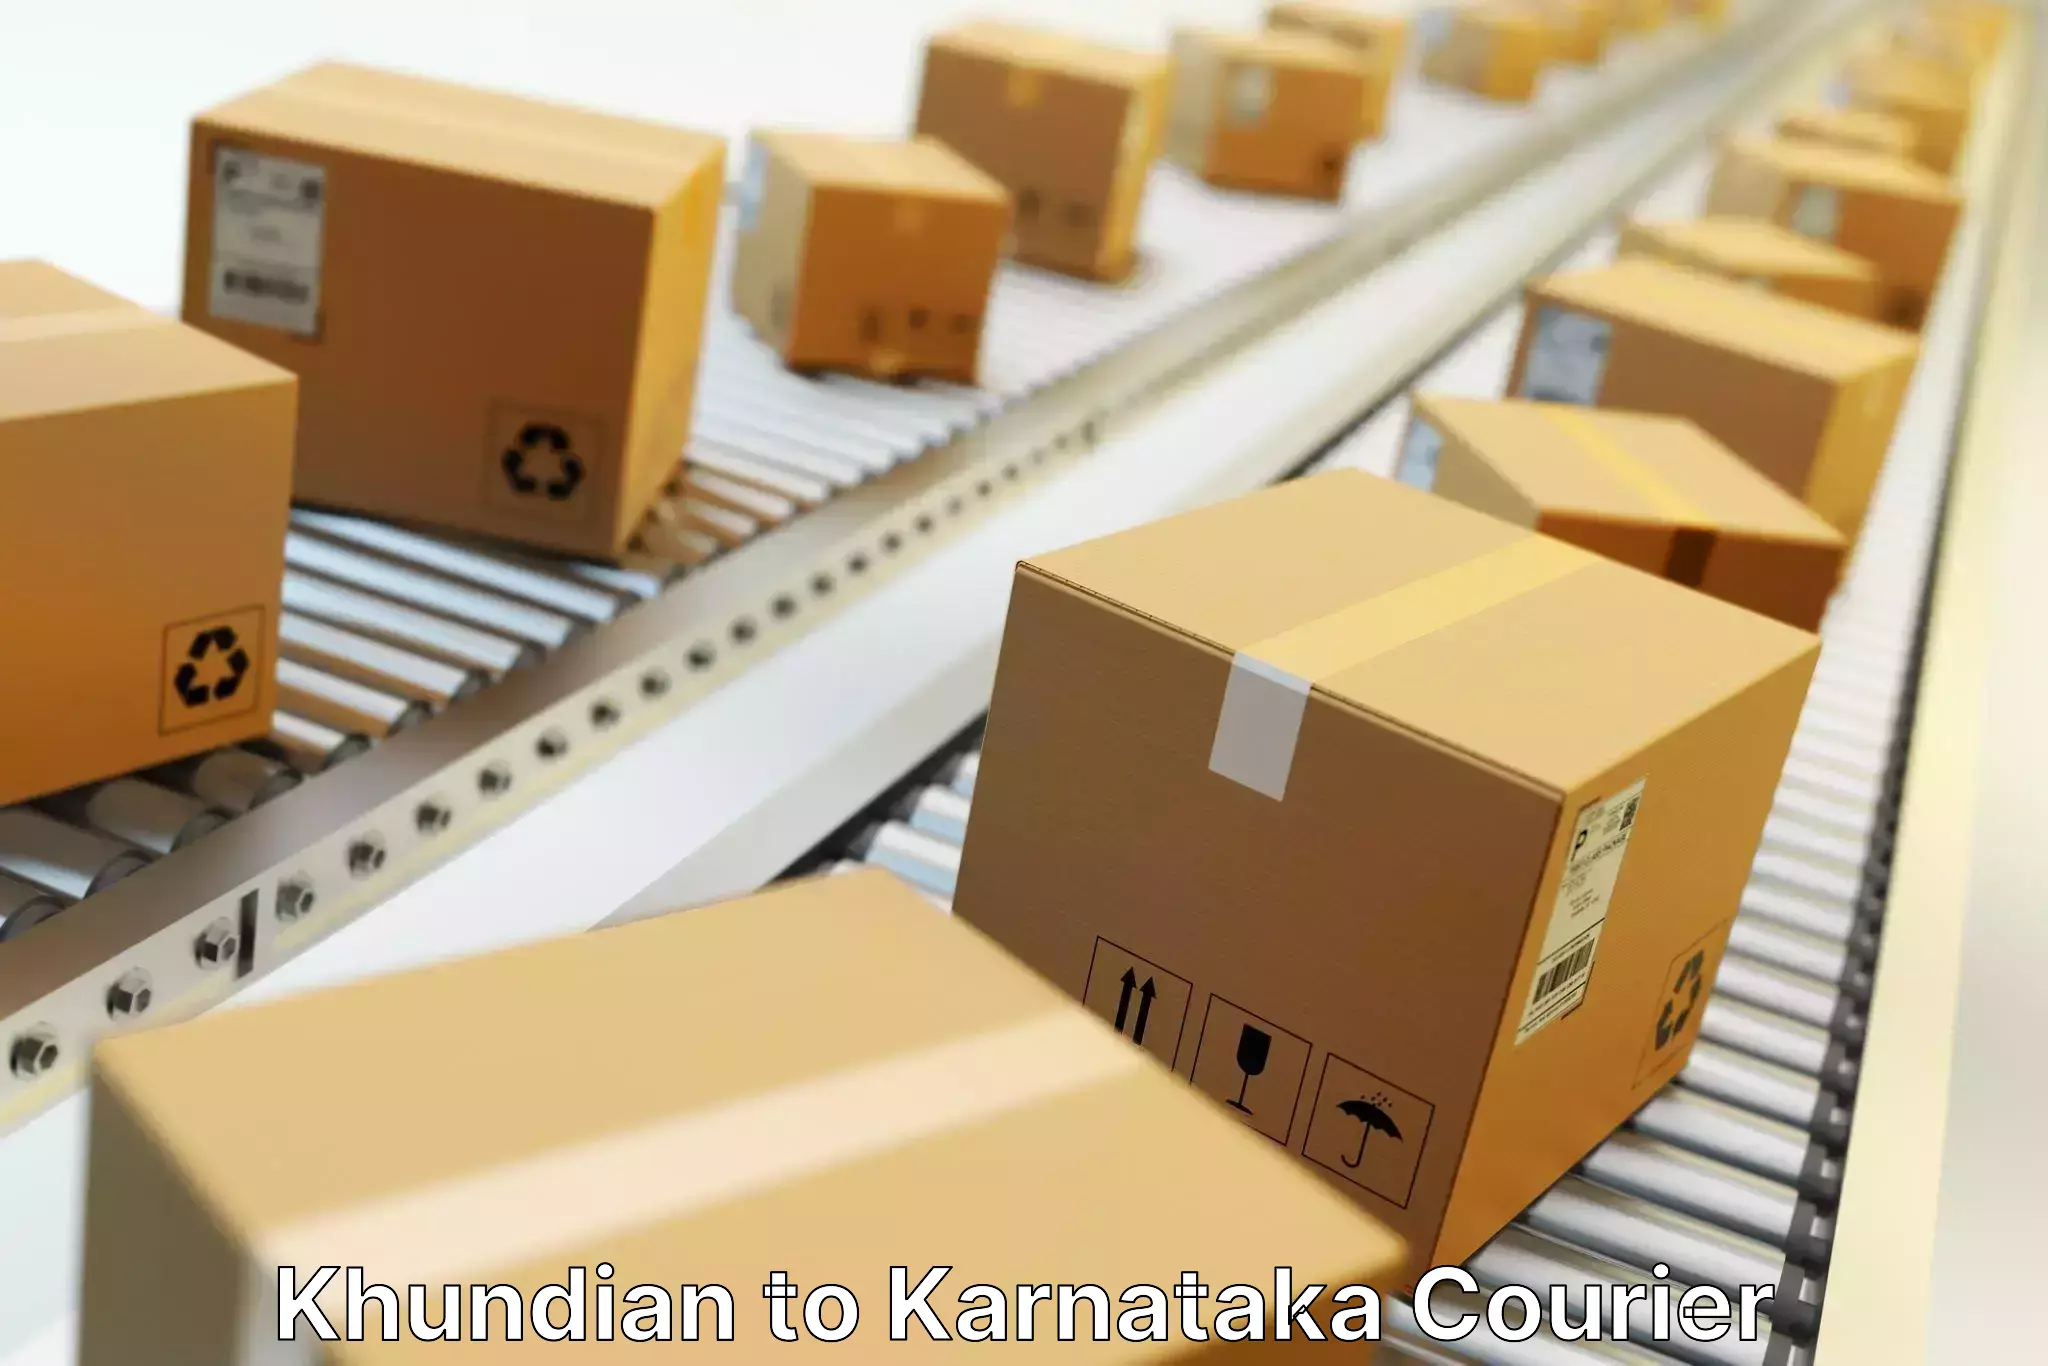 Express package handling Khundian to Channarayapatna